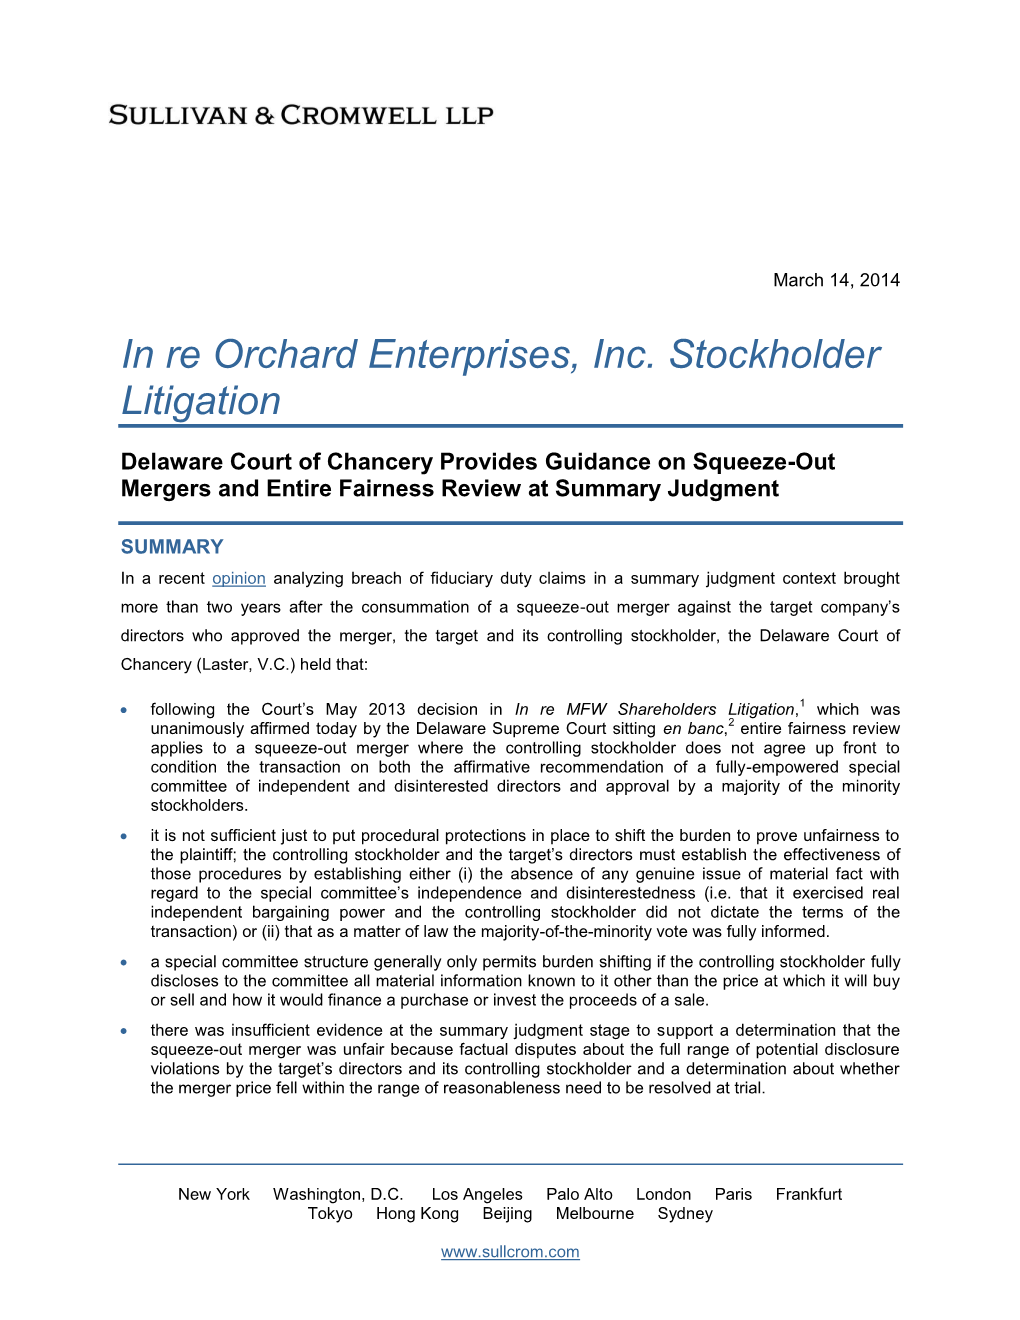 In Re Orchard Enterprises, Inc. Stockholder Litigation